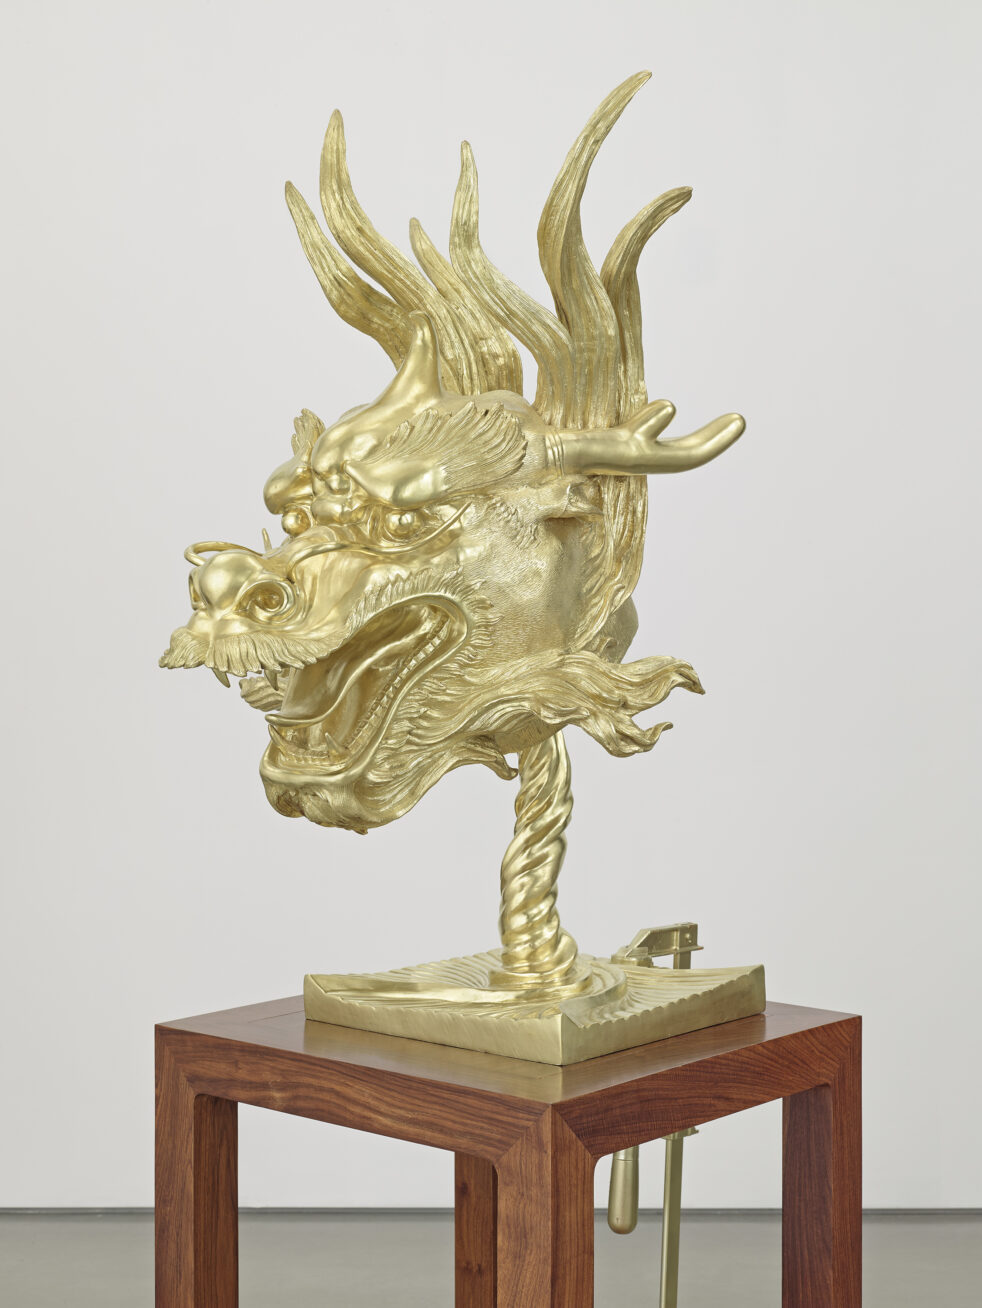 Photograph of a sculpture of a golden dragon head